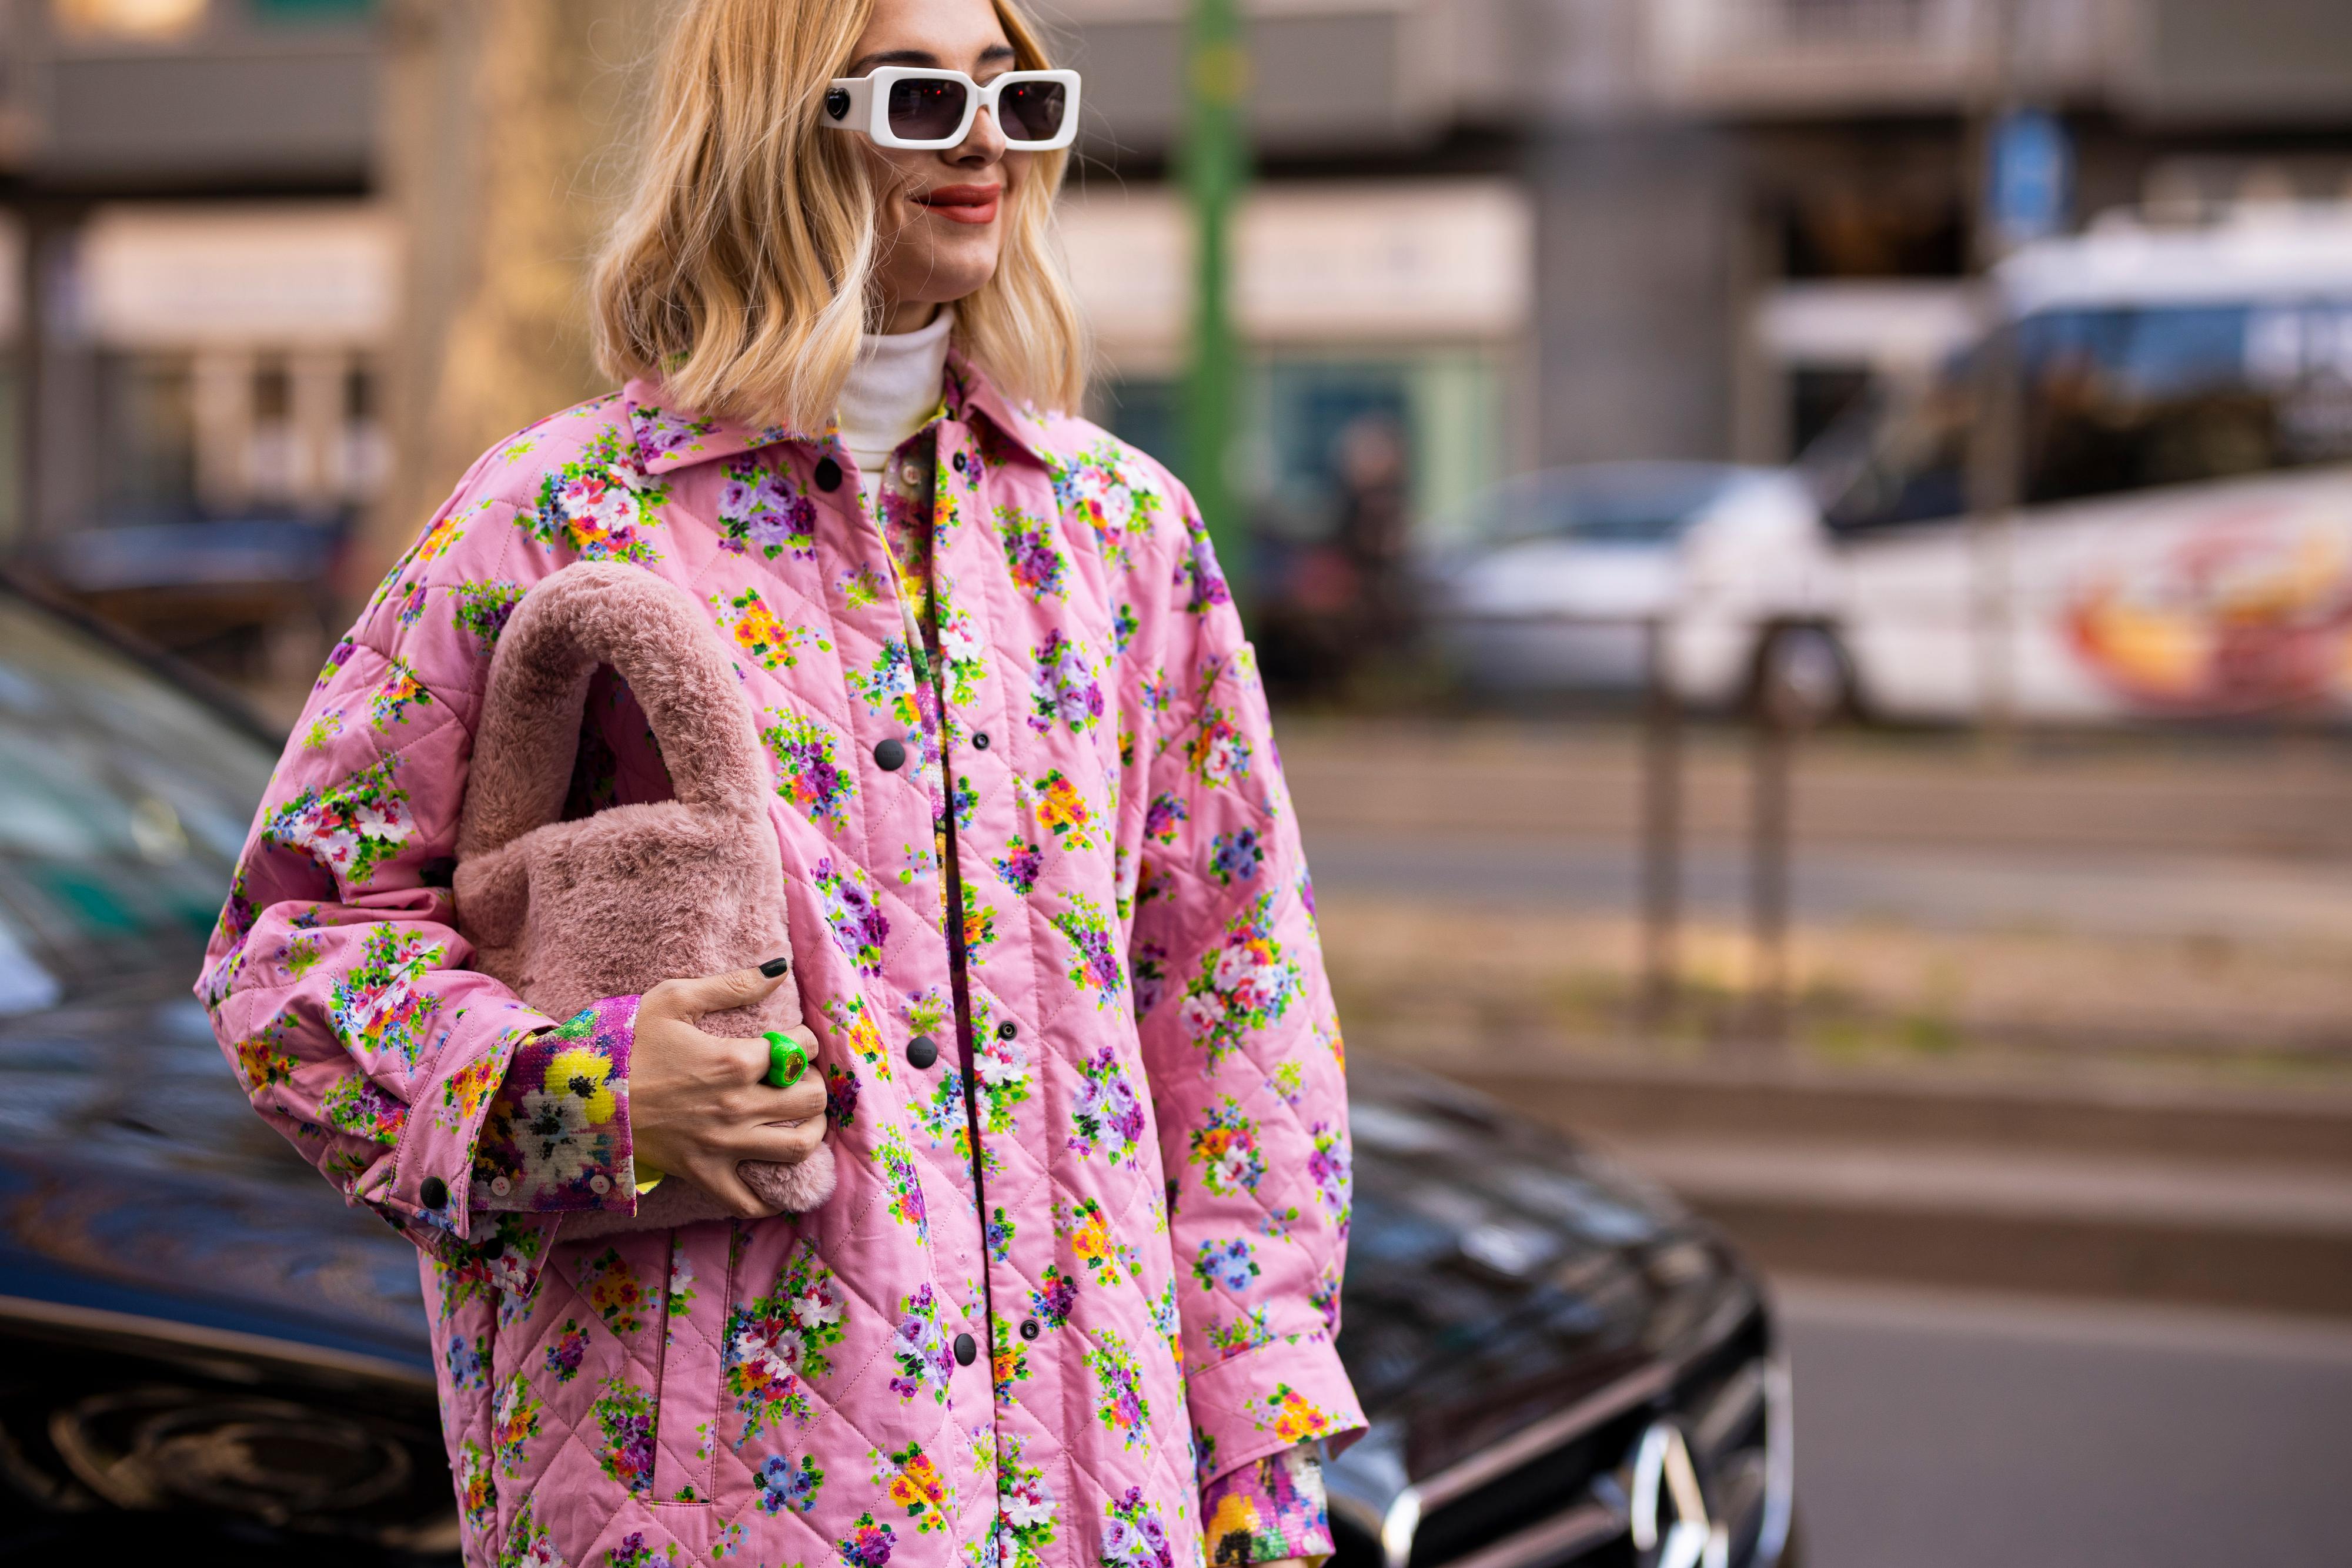 VÅRLIG: Quiltede jakker er blant vårens trender, og det var også synlig under moteuken i Milano. Se merke og pris på jakken i saken. 